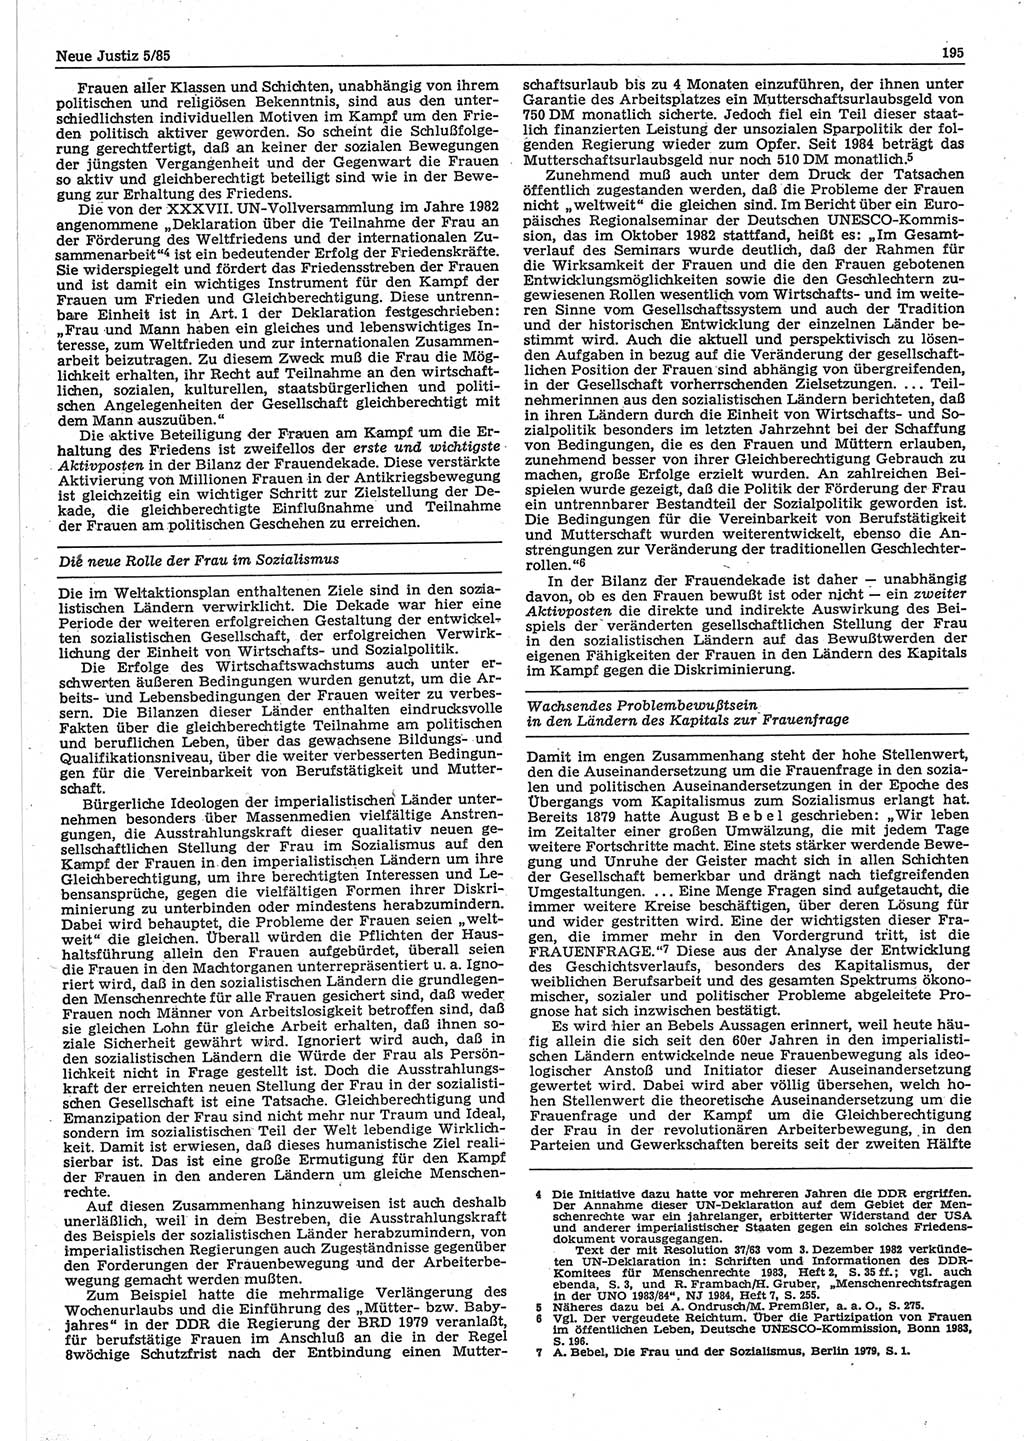 Neue Justiz (NJ), Zeitschrift für sozialistisches Recht und Gesetzlichkeit [Deutsche Demokratische Republik (DDR)], 39. Jahrgang 1985, Seite 195 (NJ DDR 1985, S. 195)